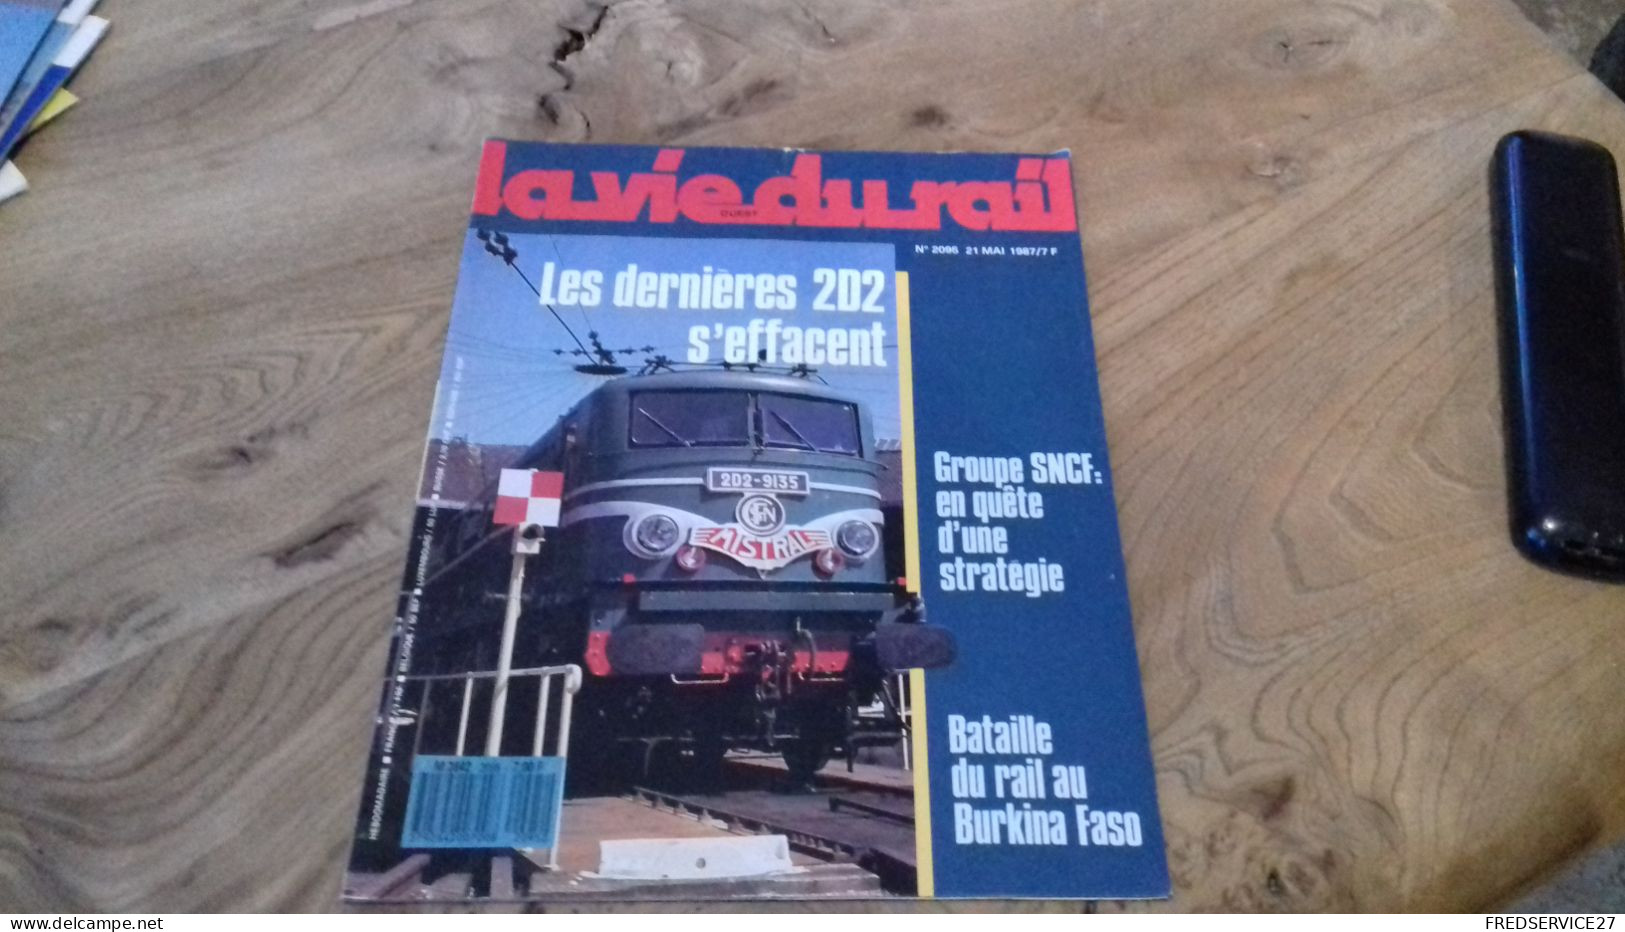 155/ LA VIE DU RAIL N° 2095  / JUIN 1987 / LES DERNIERES 2D2 S EFFACENT / GROUPE SNCF EN QUETE D UNE STRATEGIE - Eisenbahnen & Bahnwesen